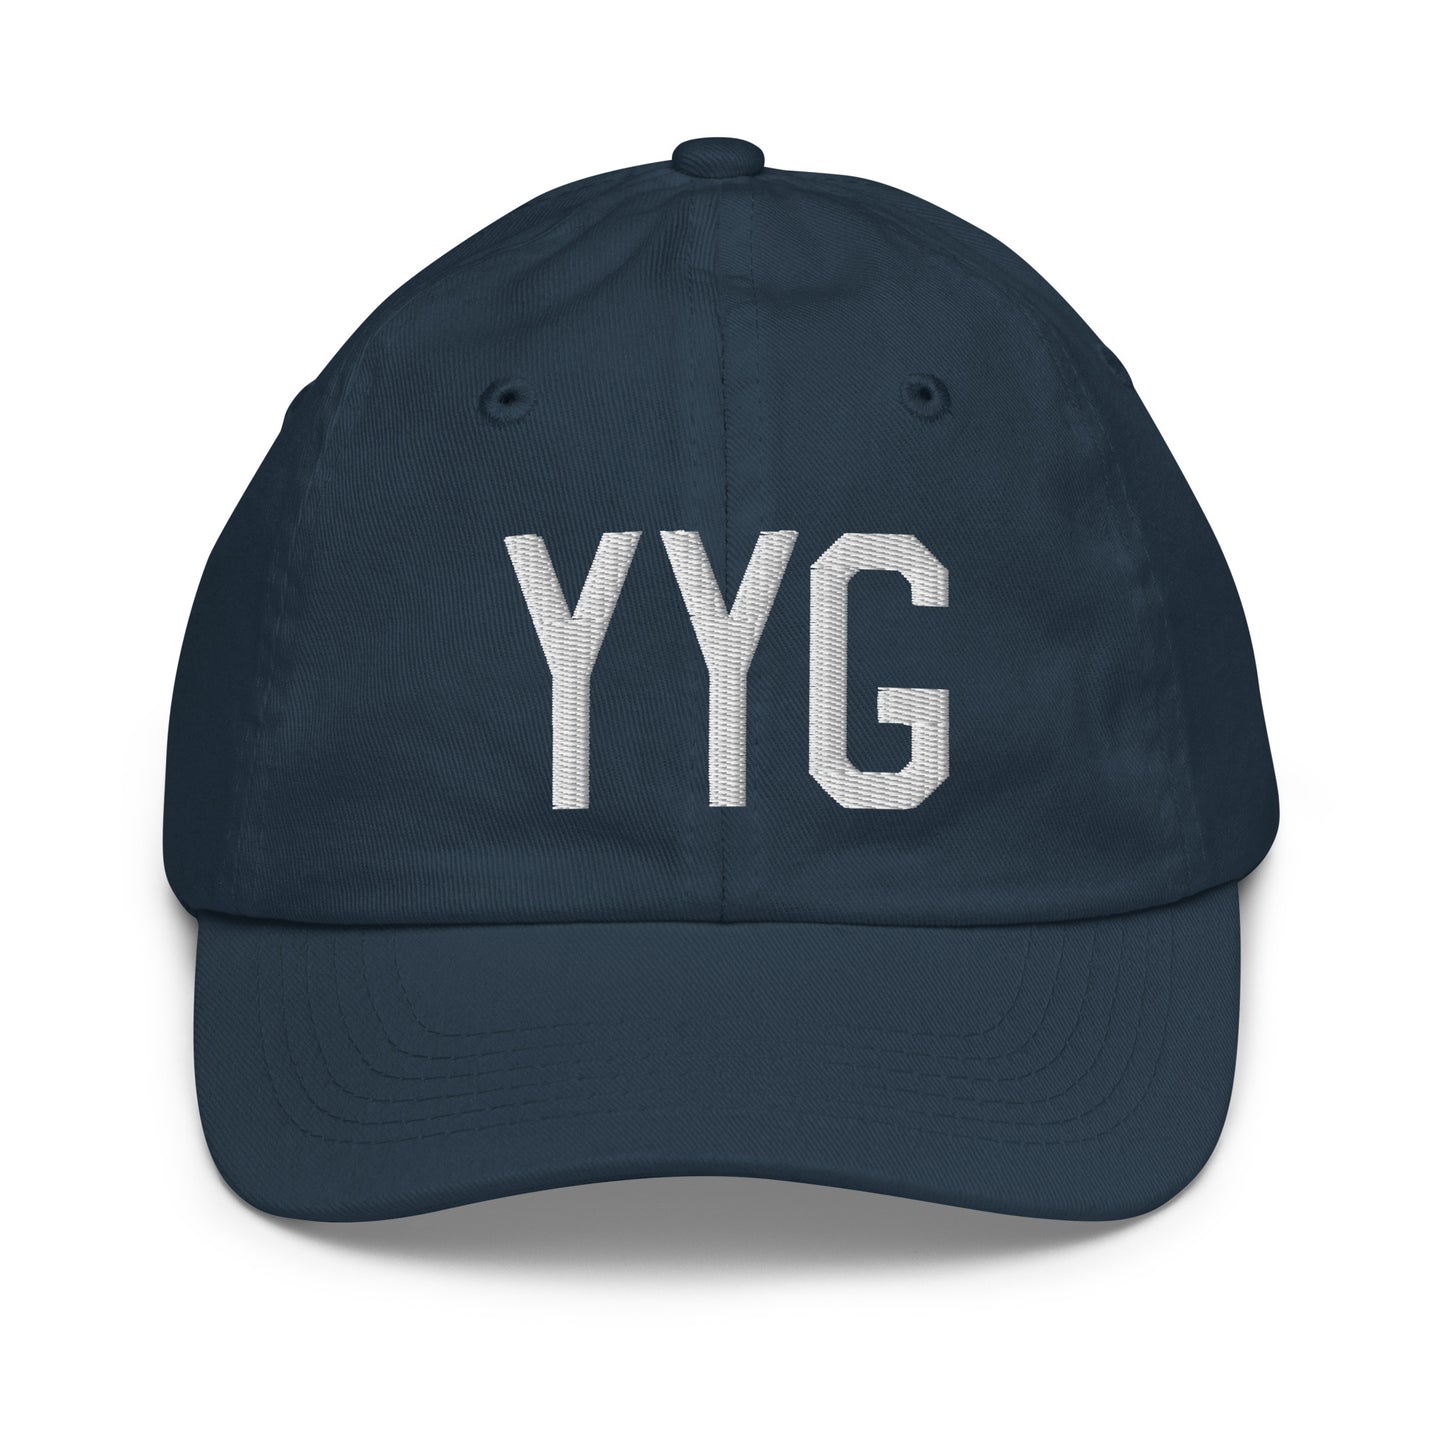 Airport Code Kid's Baseball Cap - White • YYG Charlottetown • YHM Designs - Image 14